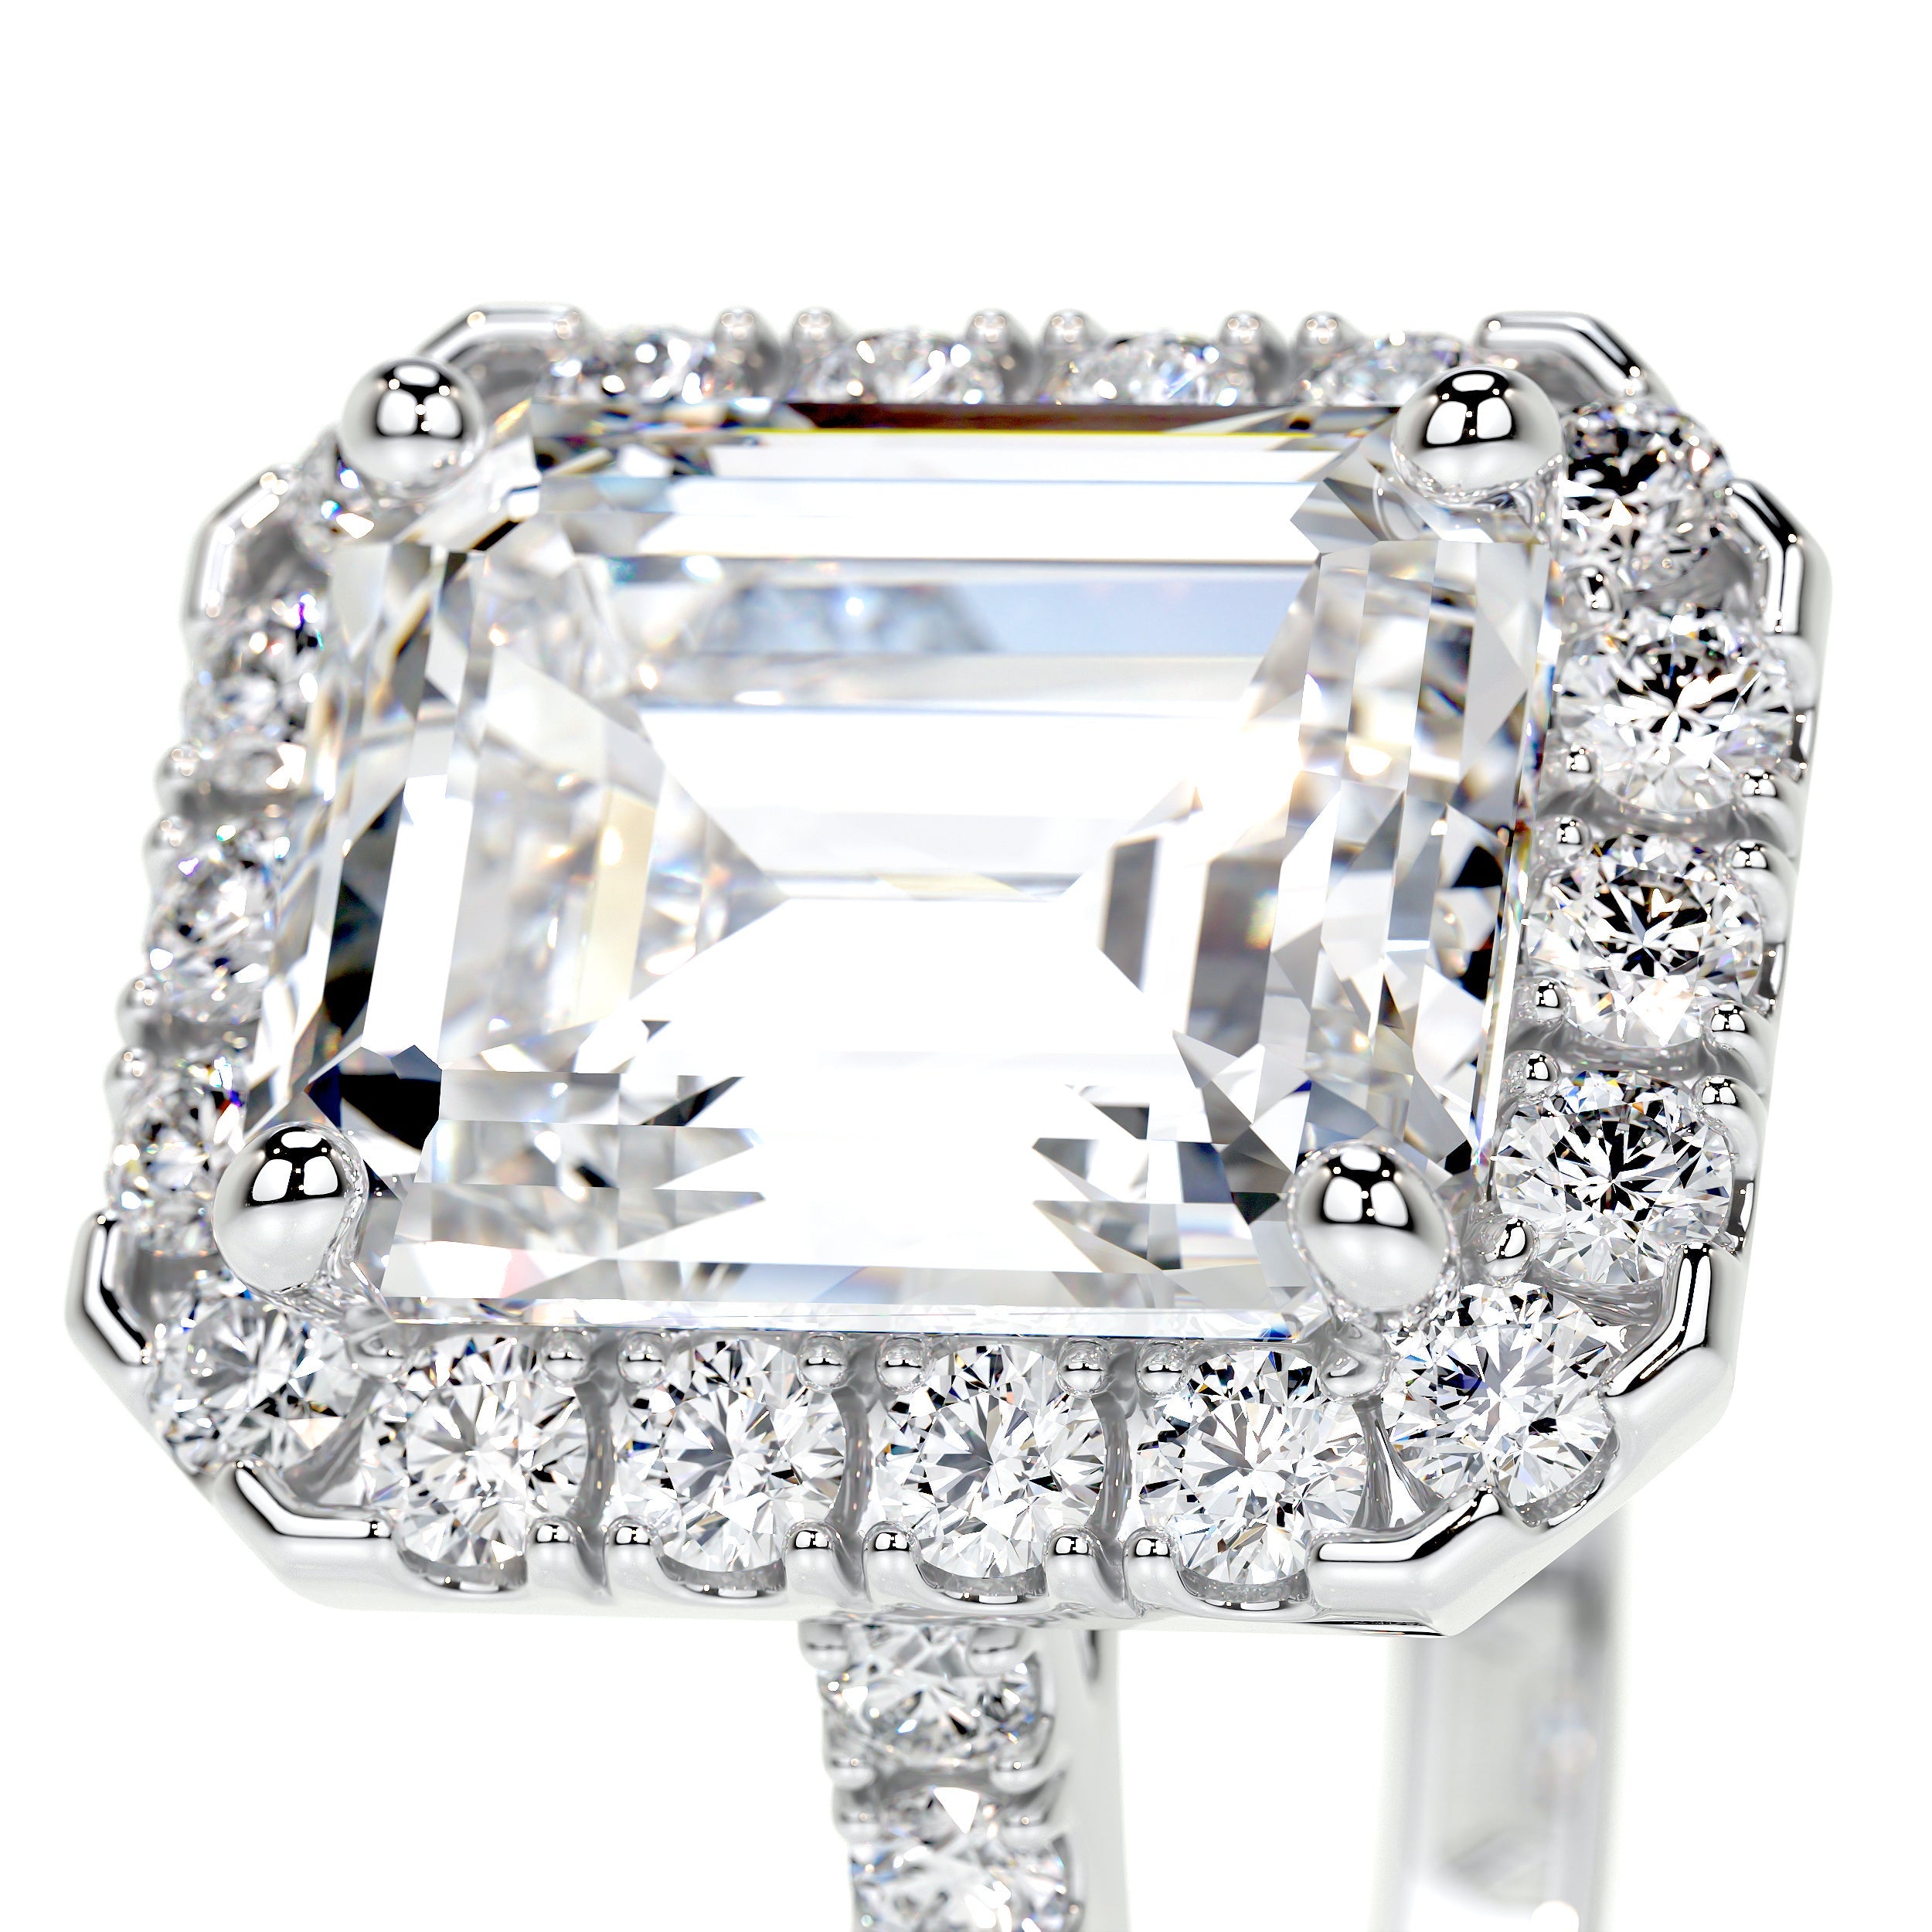 Zoey Lab Grown Diamond Ring   (2 Carat) -14K White Gold